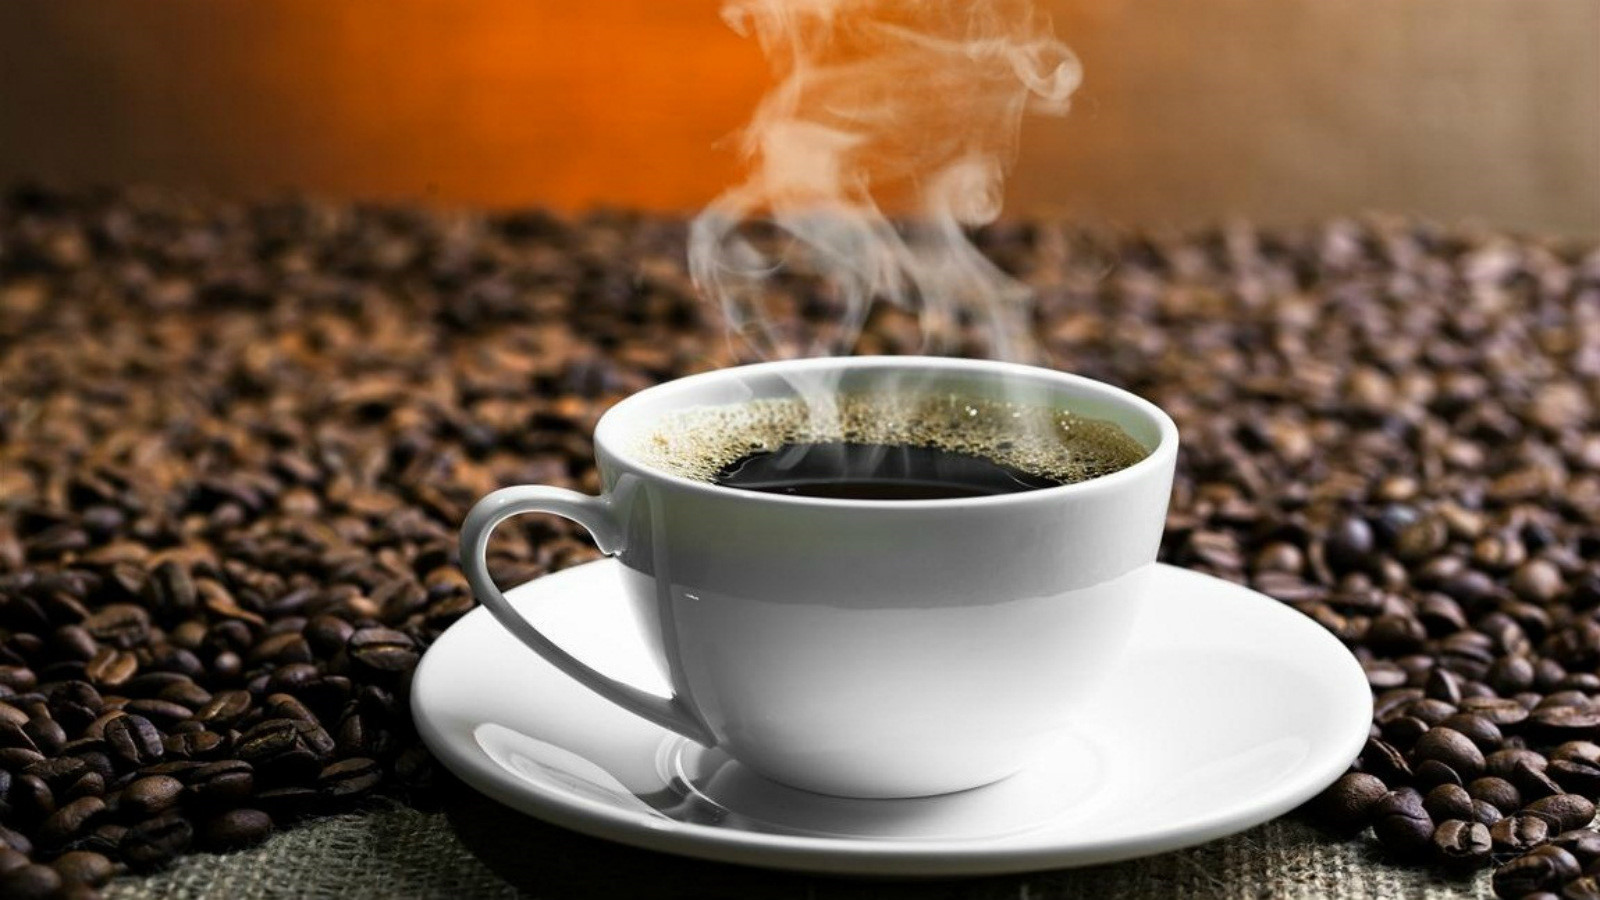 Học ngay 4 cách nhận biết cà phê nguyên chất và cà phê chứa hóa chất chuẩn xác - Ảnh 7